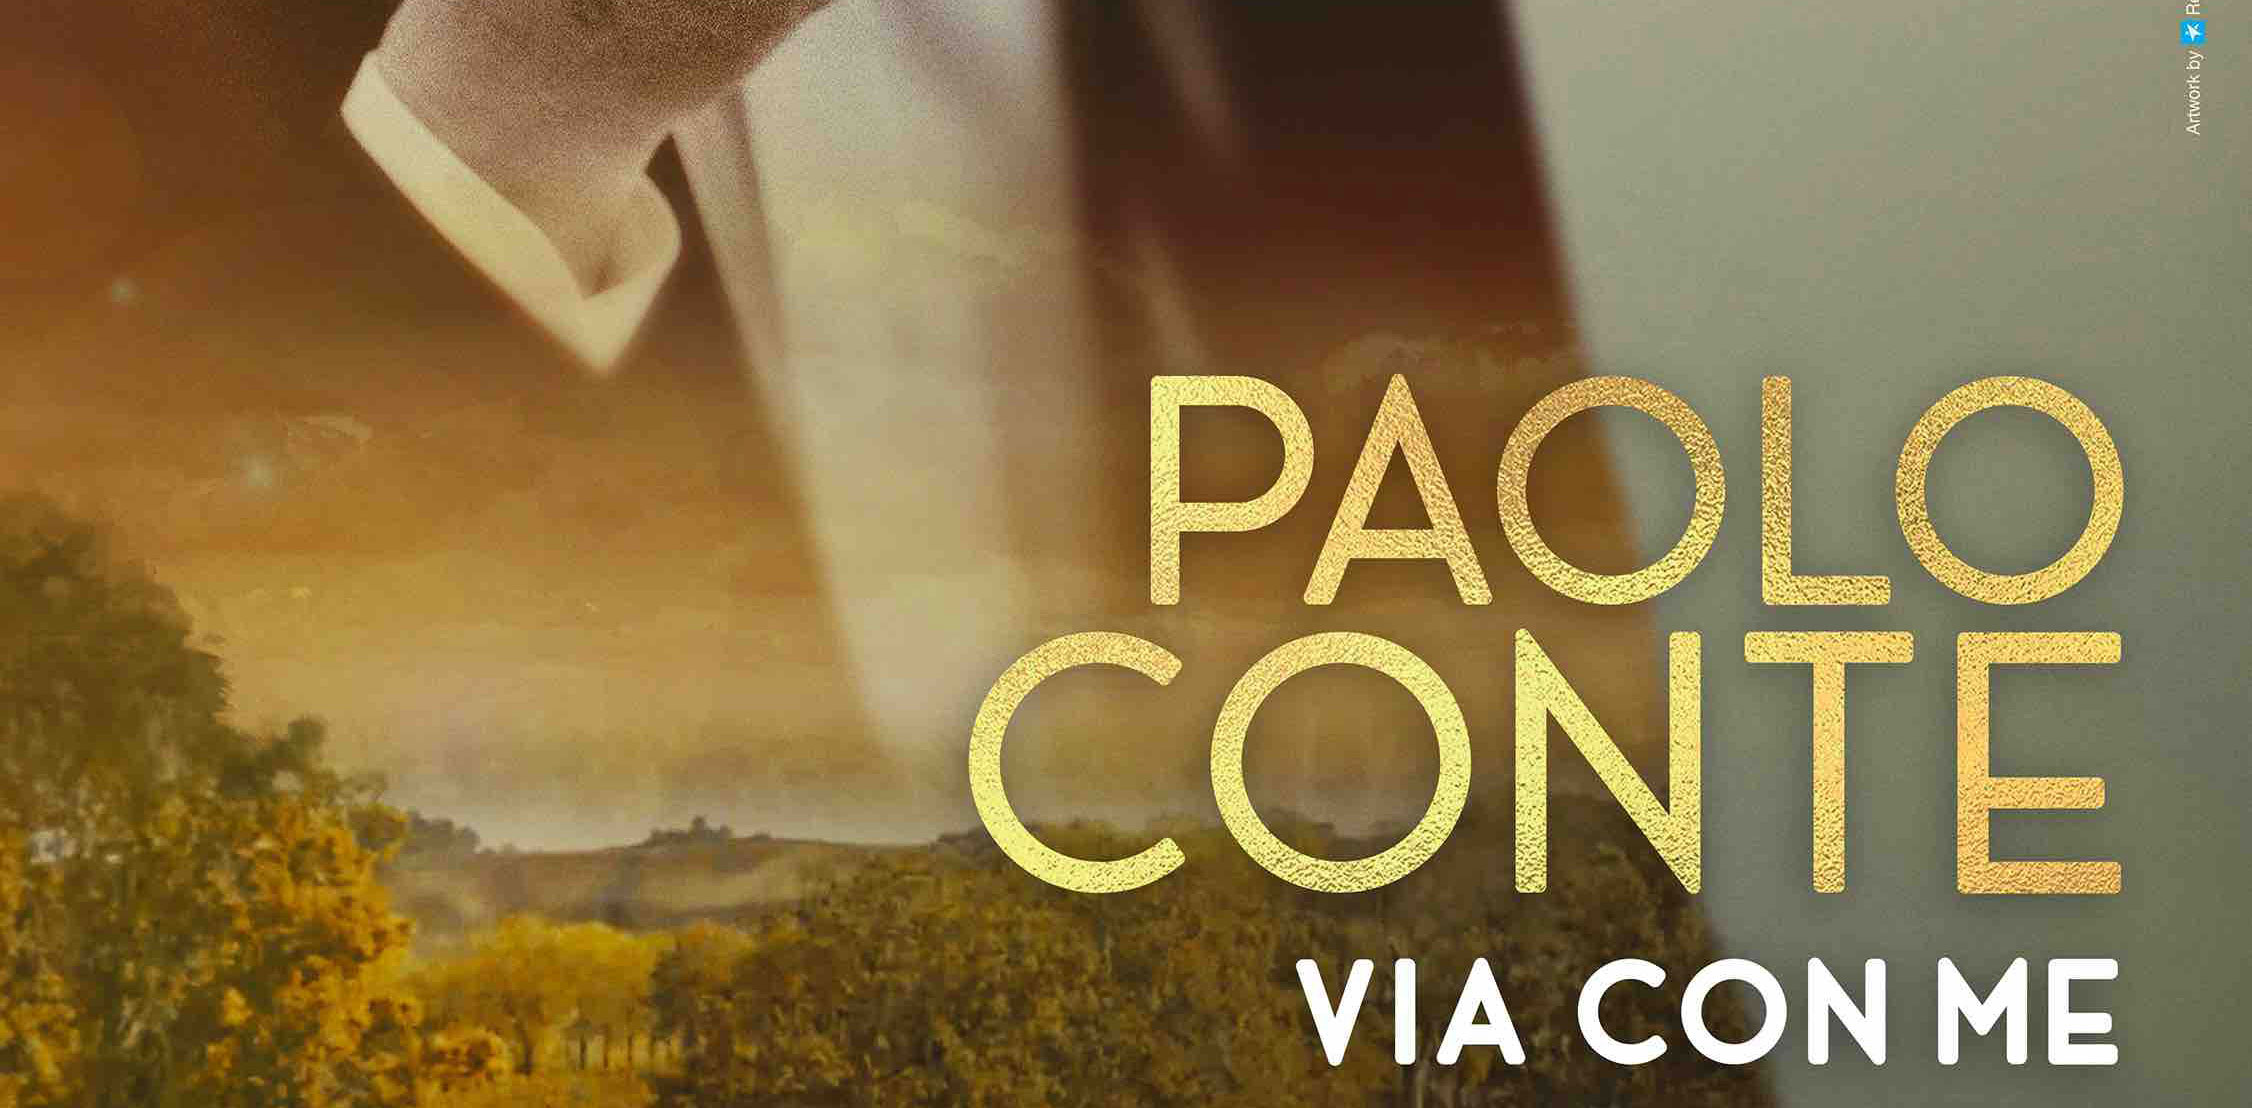 Paolo Conte, Via Con Me - Trailer del docufilm di Giorgio Verdelli